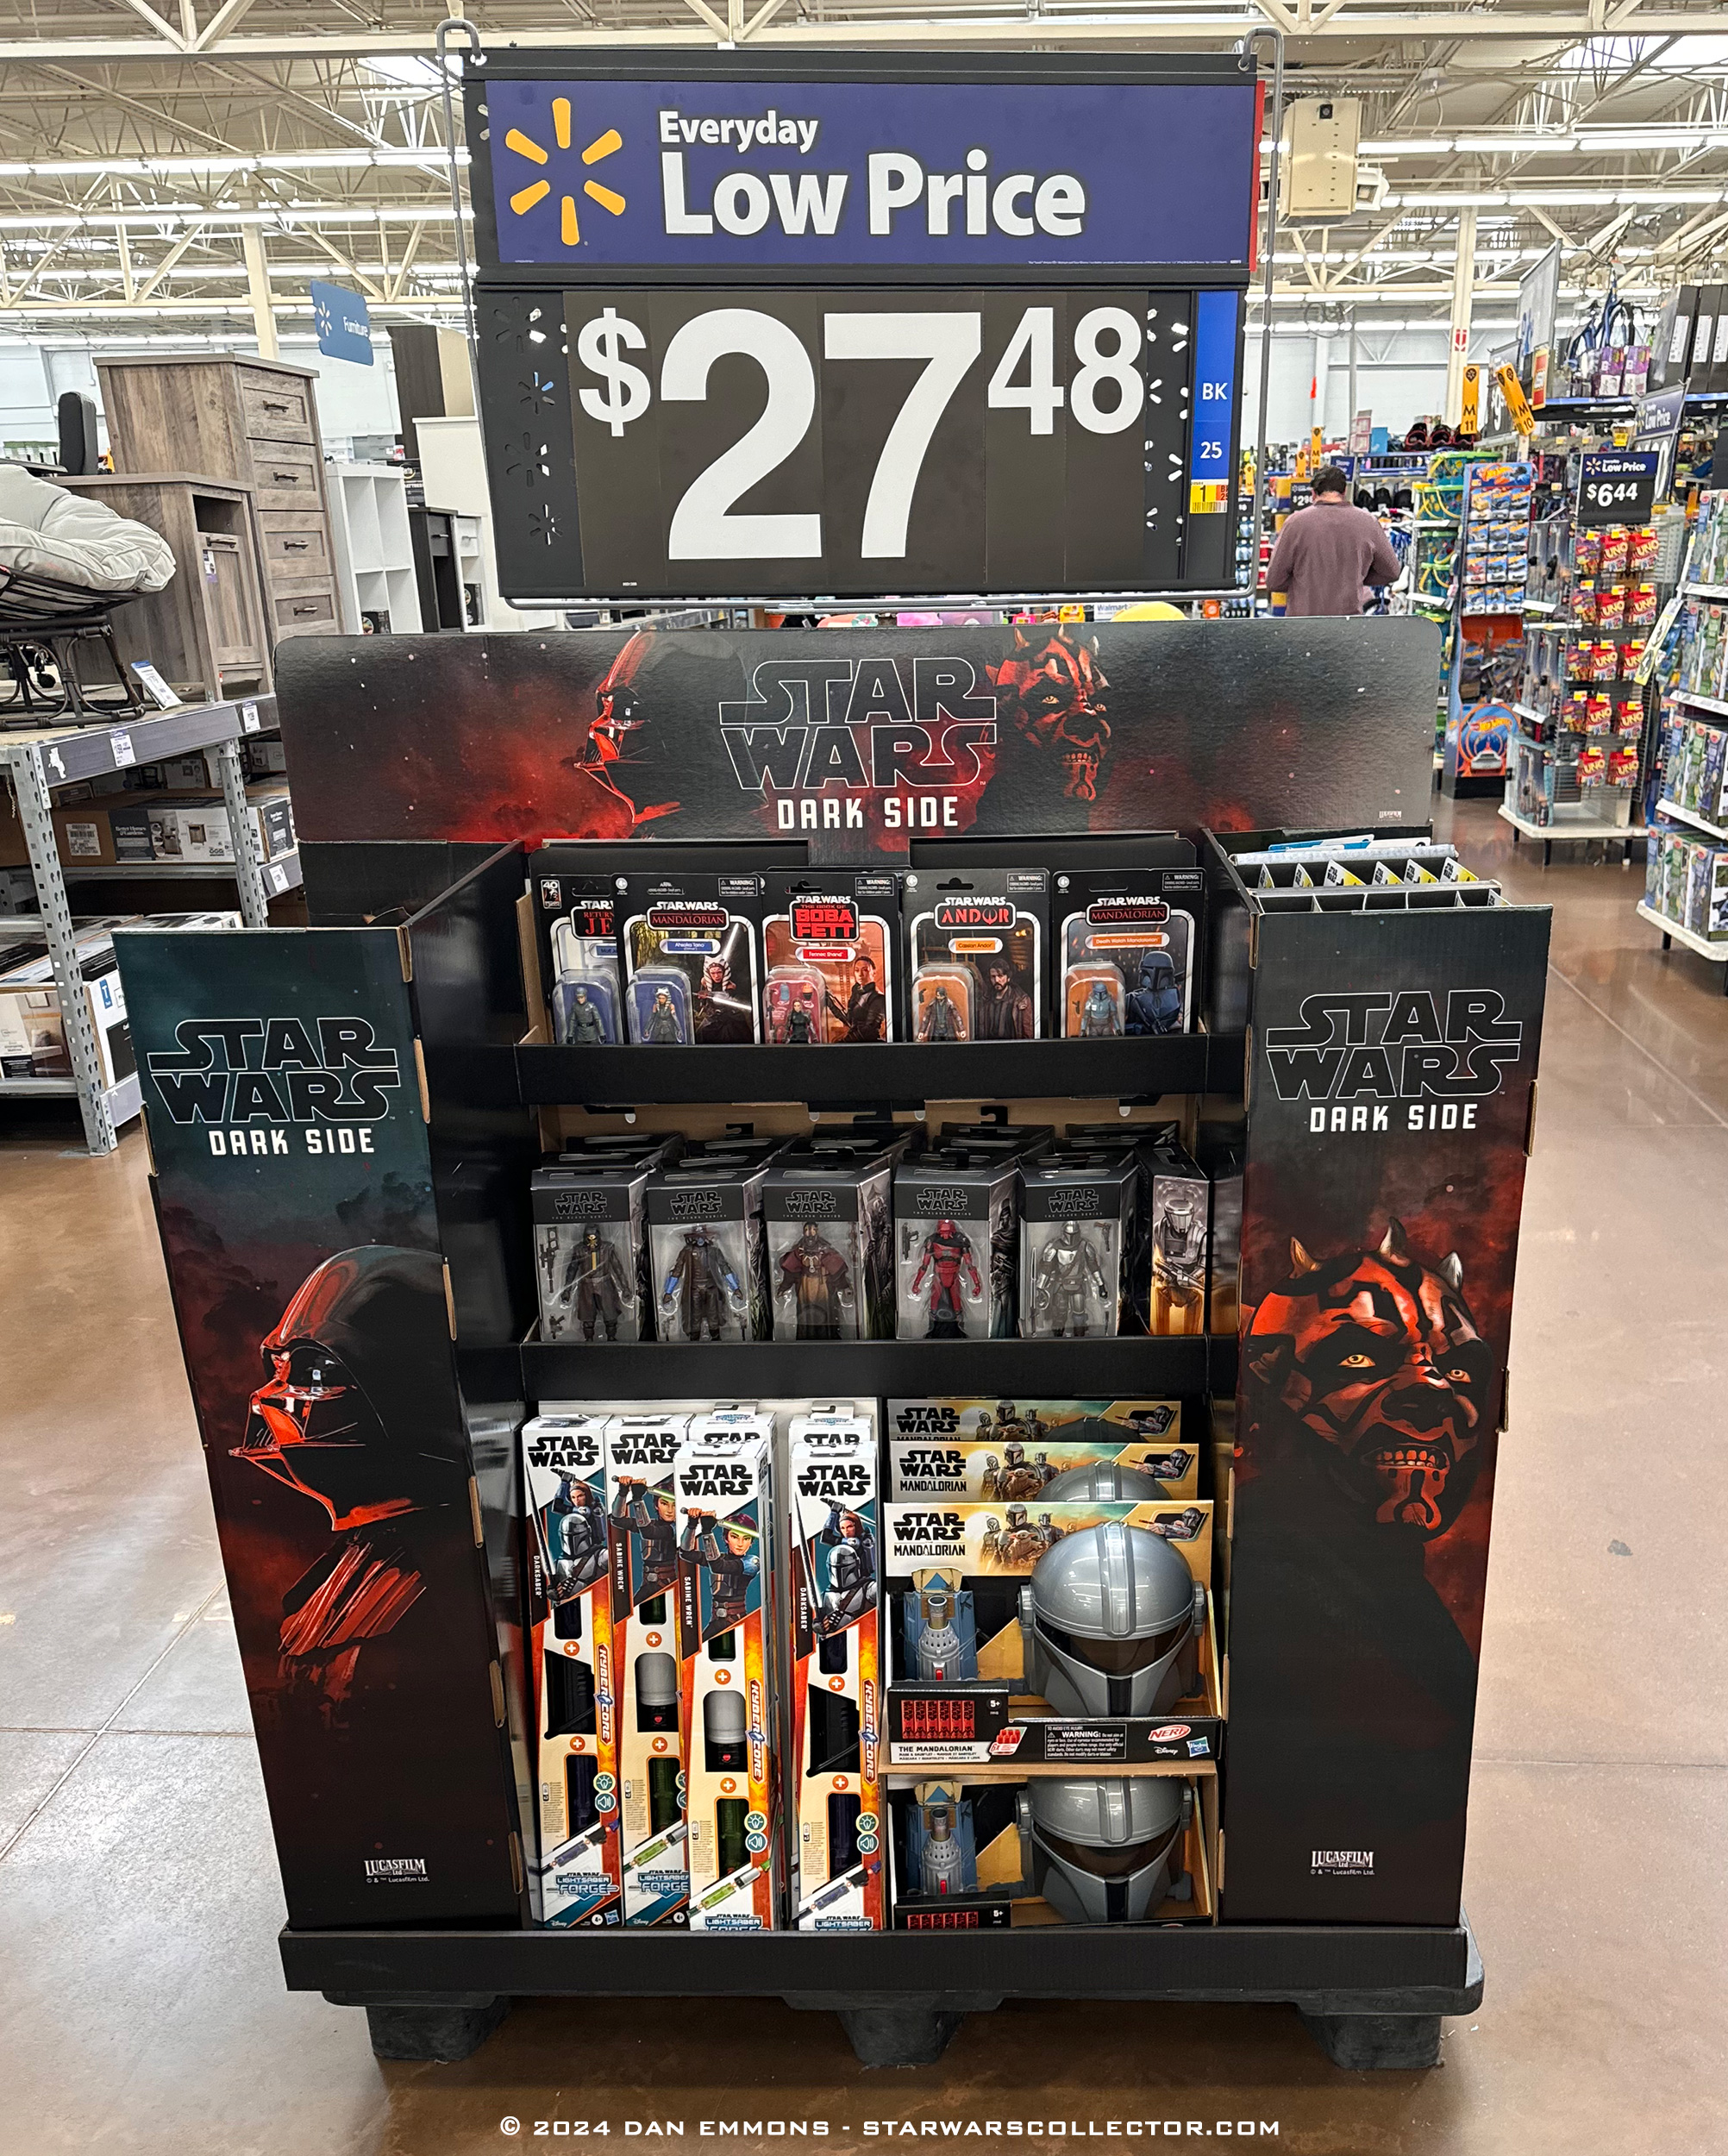 New Hasbro Star Wars Dark Side Pallet Display Found At Walmart